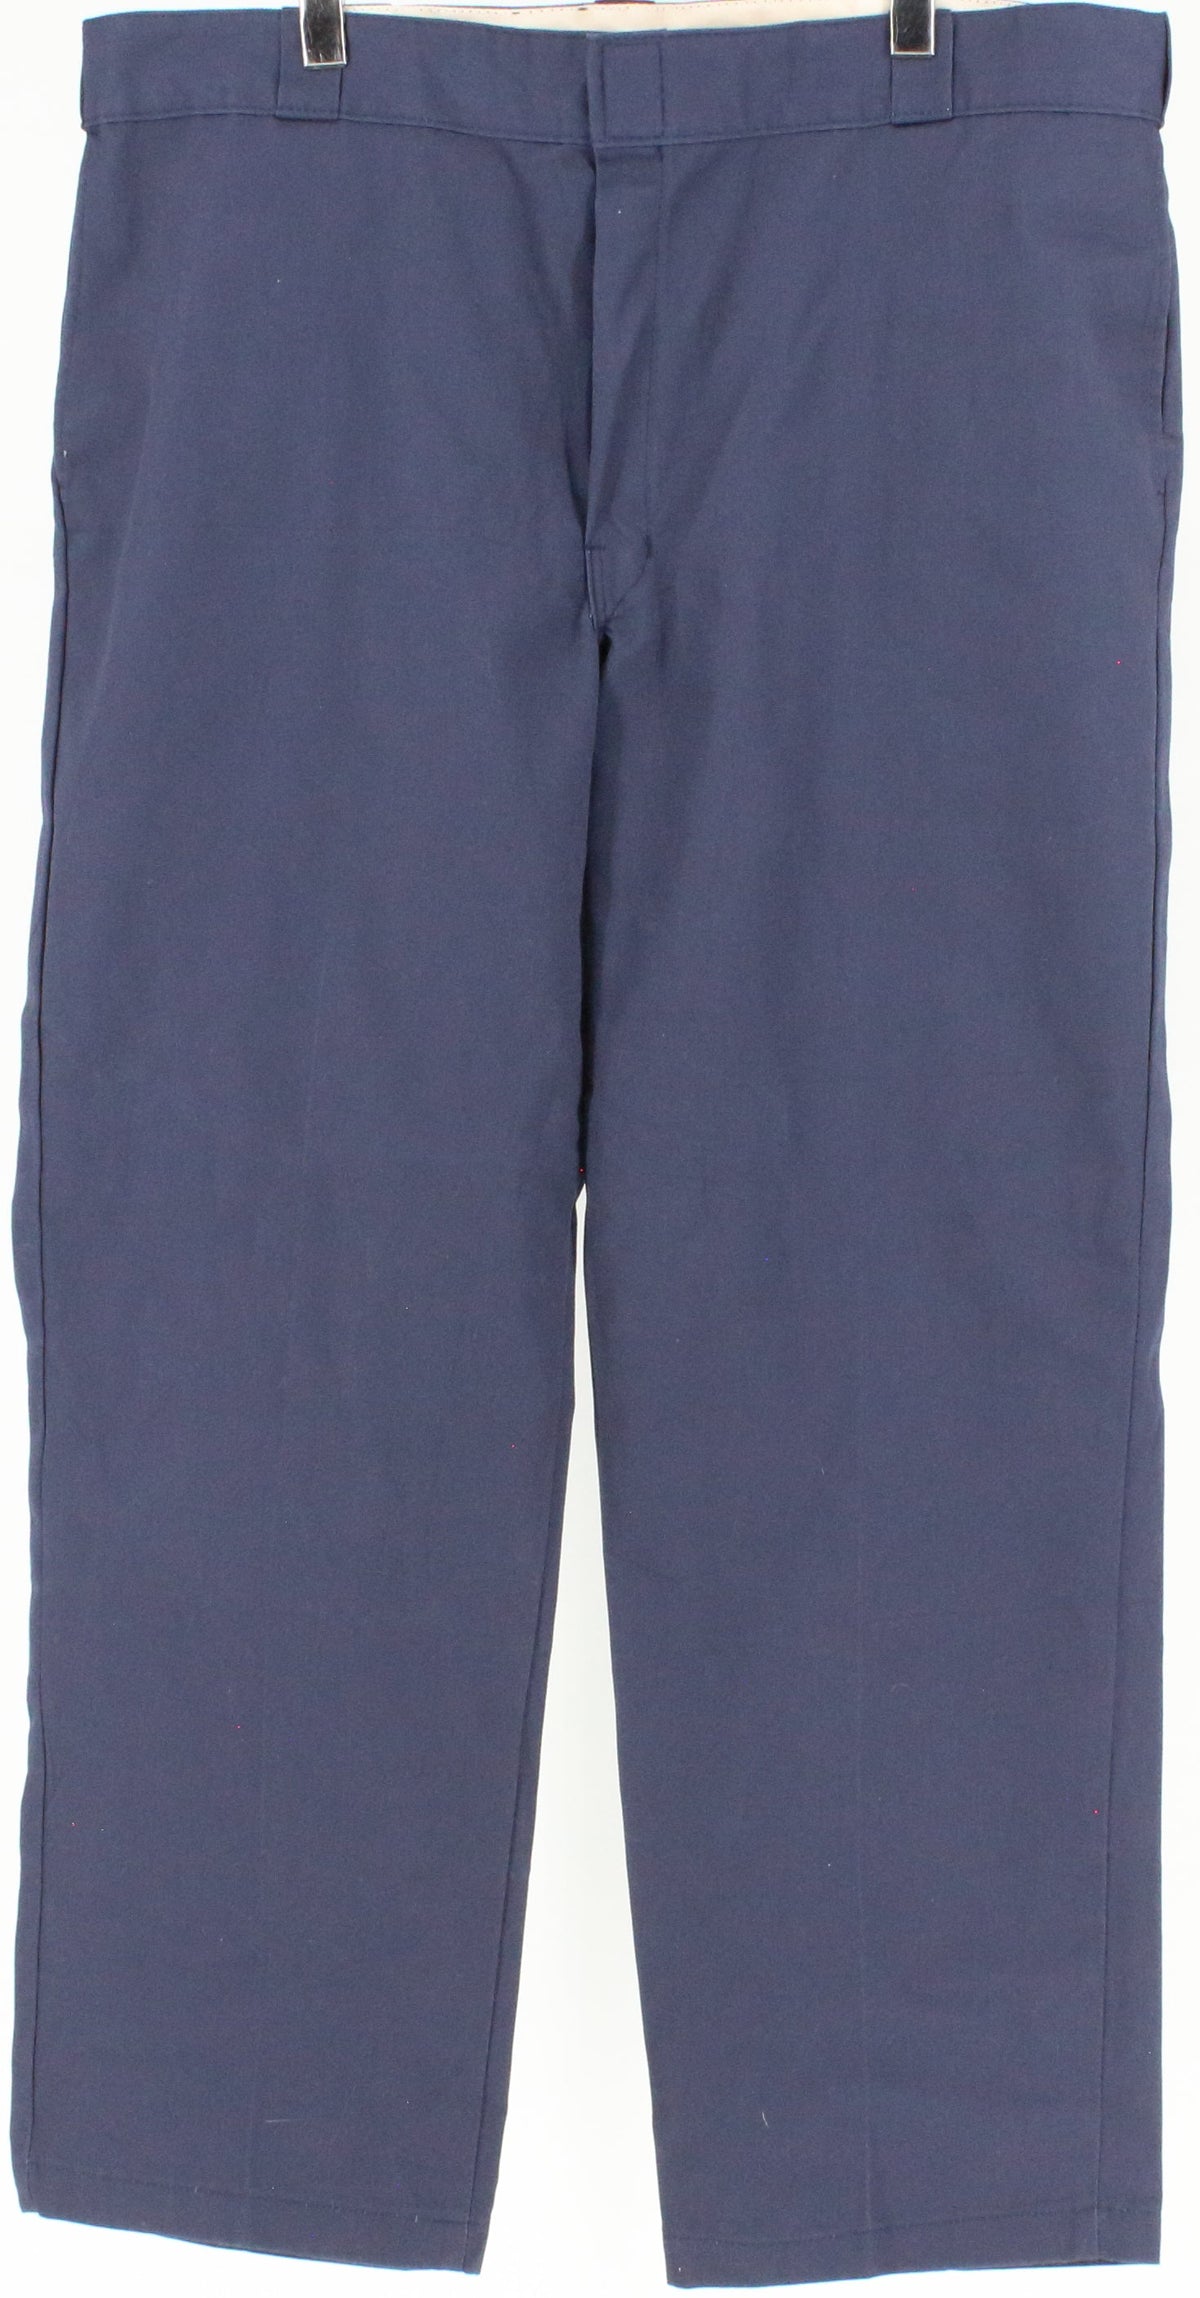 Dickies 874 Original Fit Navy Blue Pants